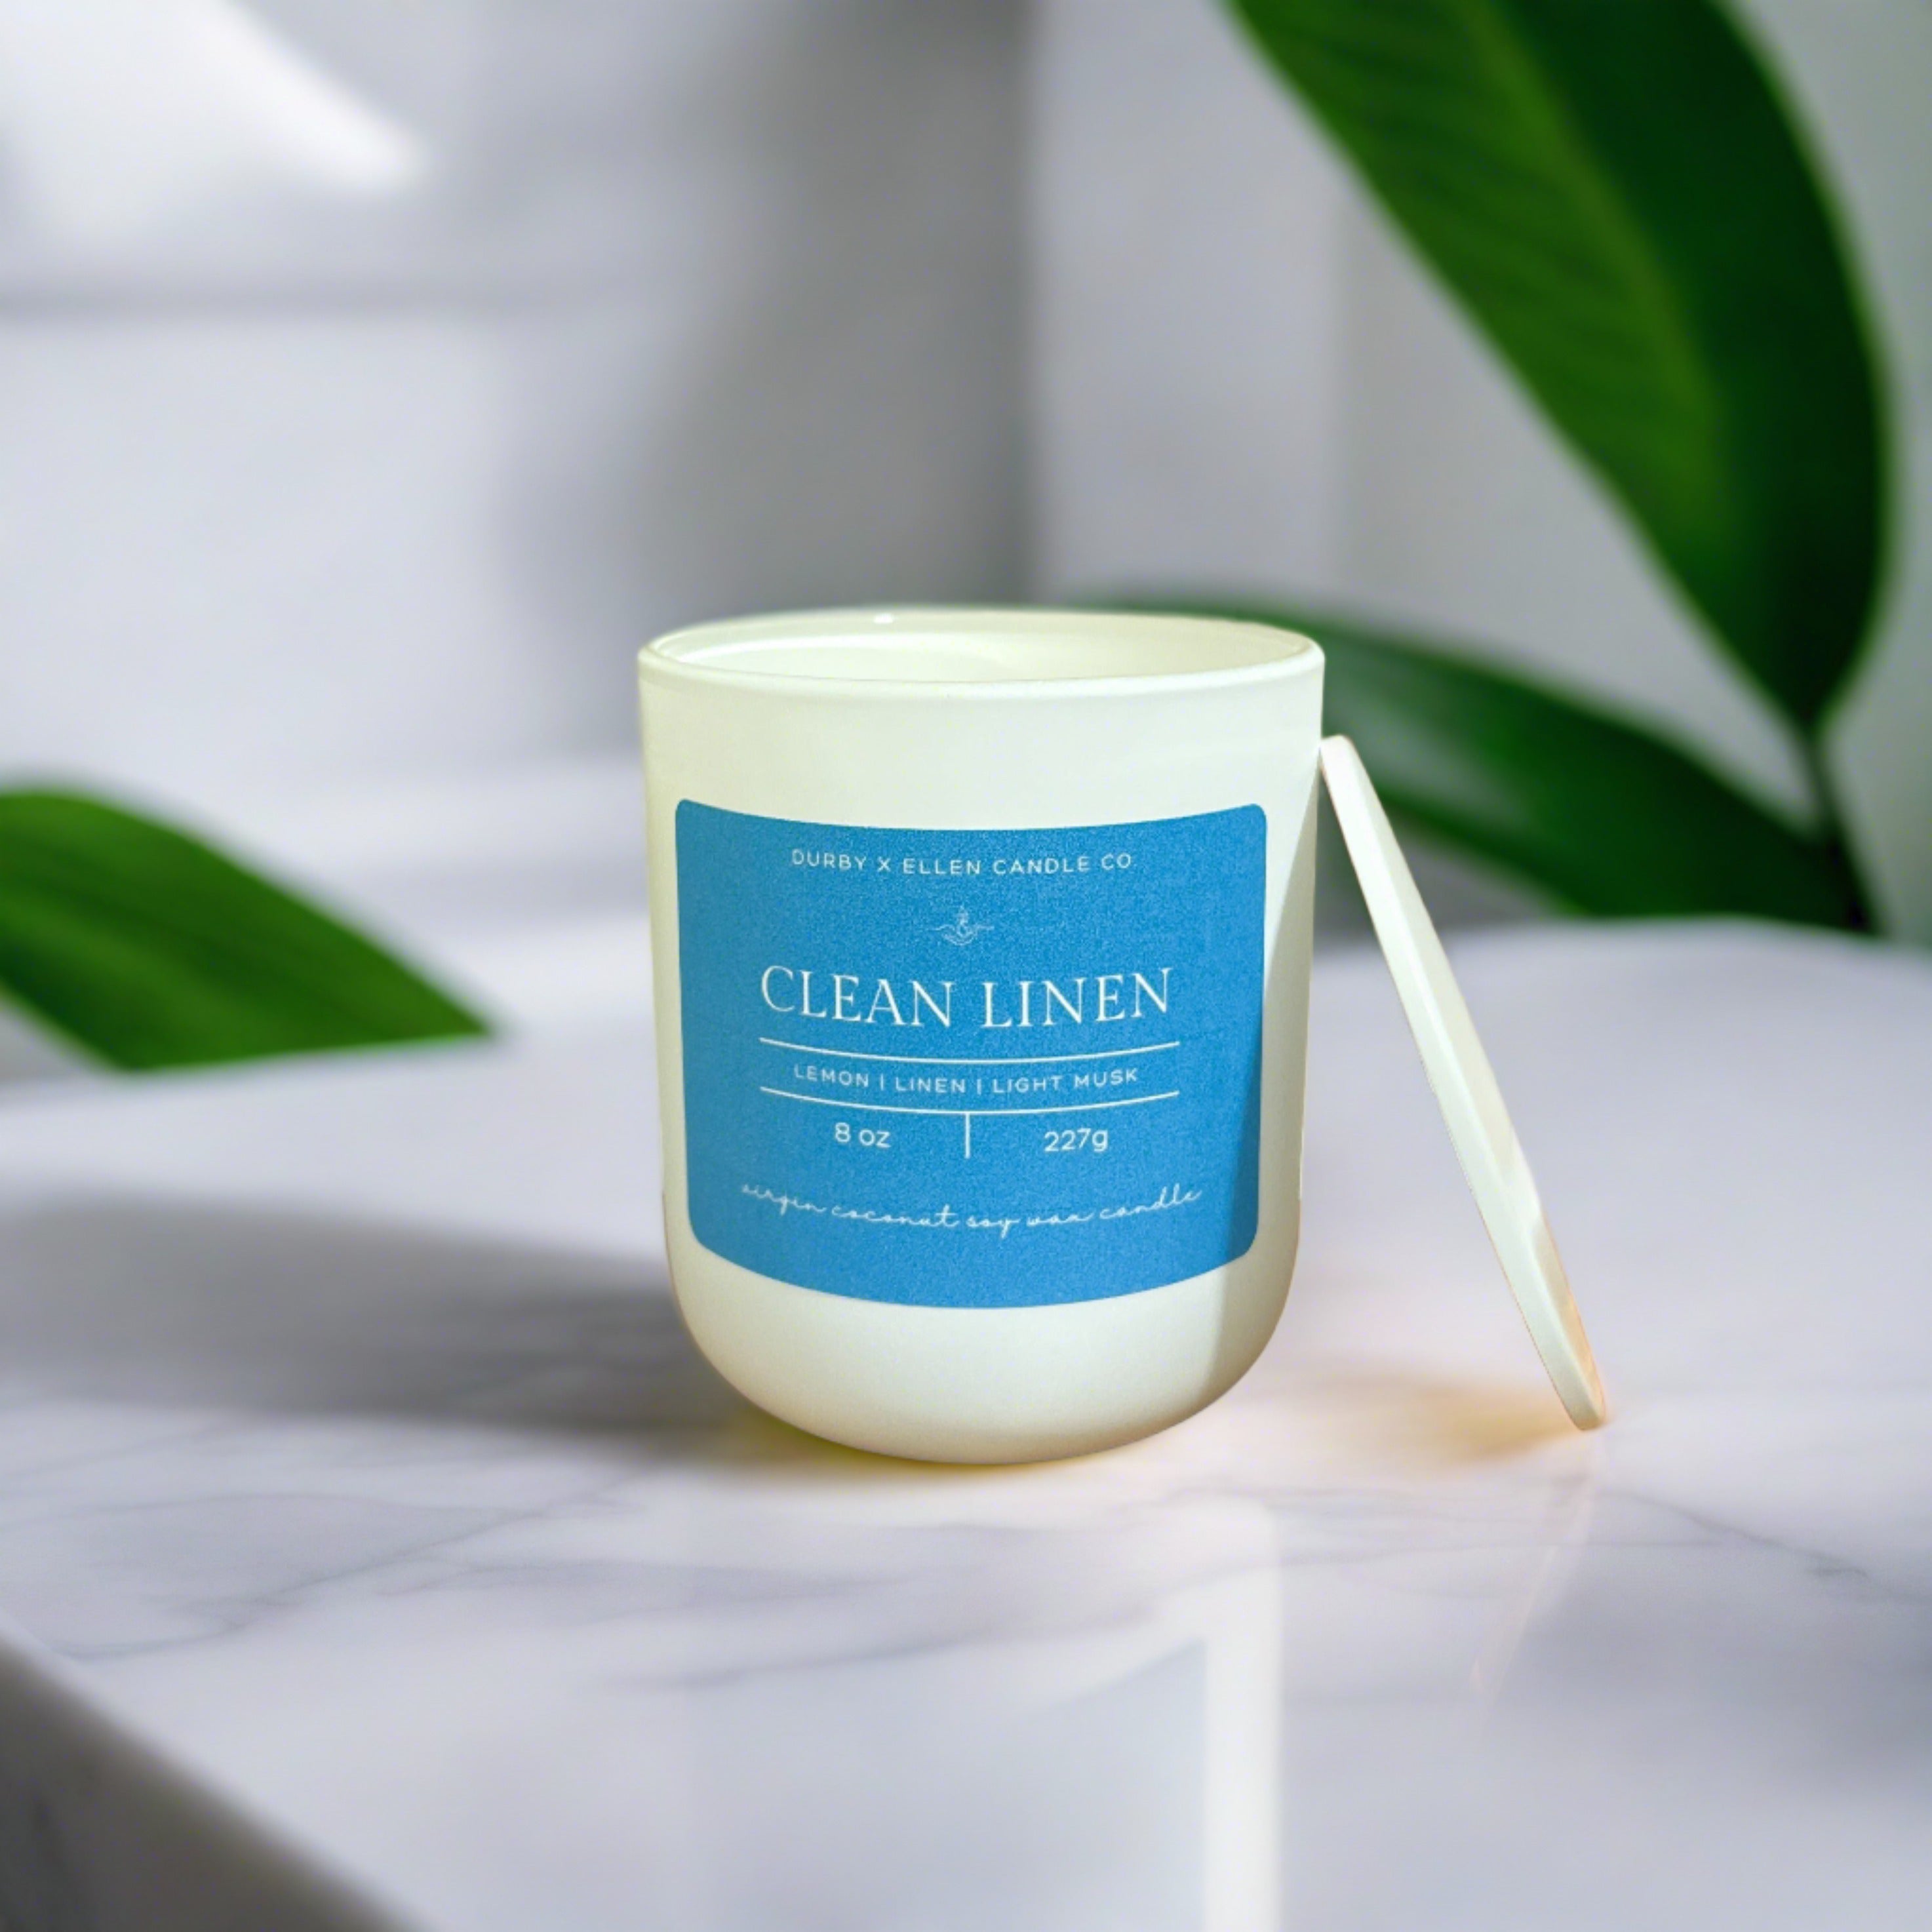 Clean Linen – Durby x Ellen Candle Co.